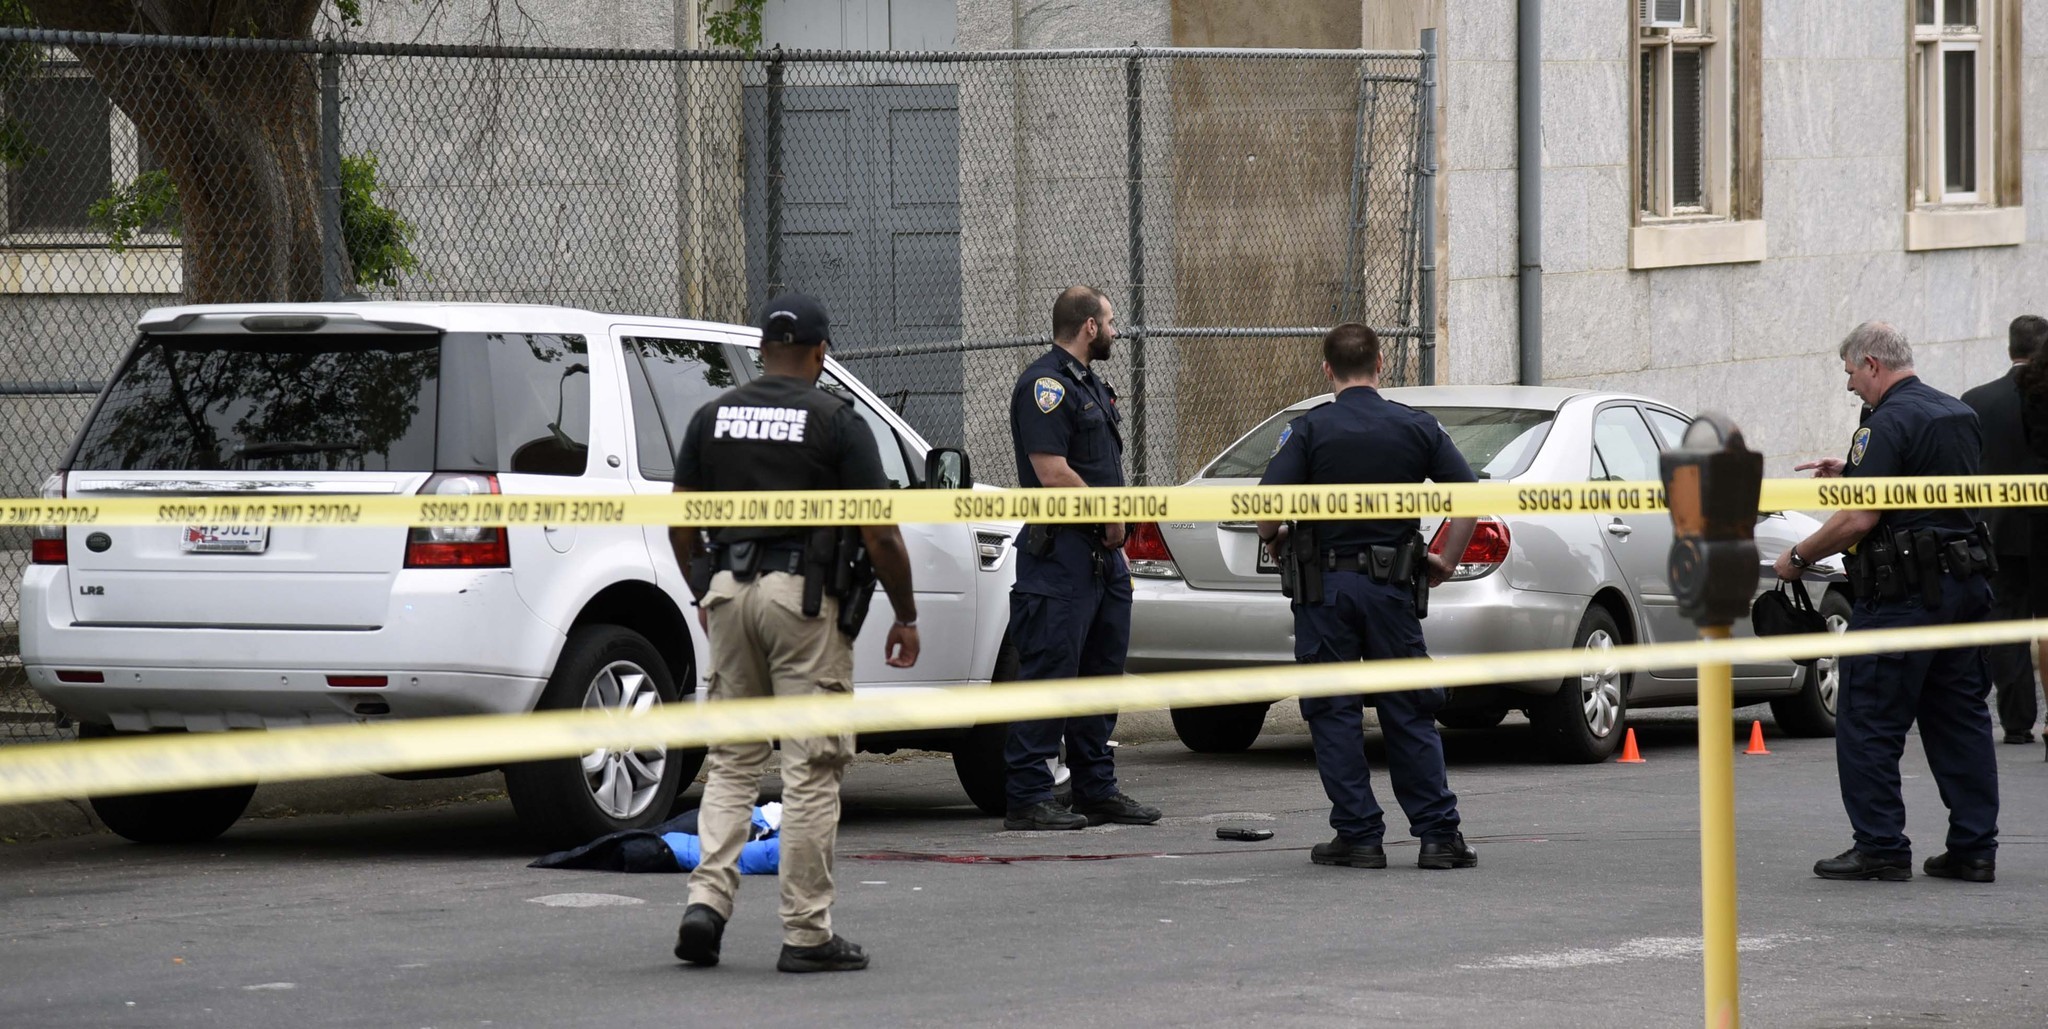 Boy shot by Baltimore police awake, alert, feeling 'bad' - Baltimore Sun